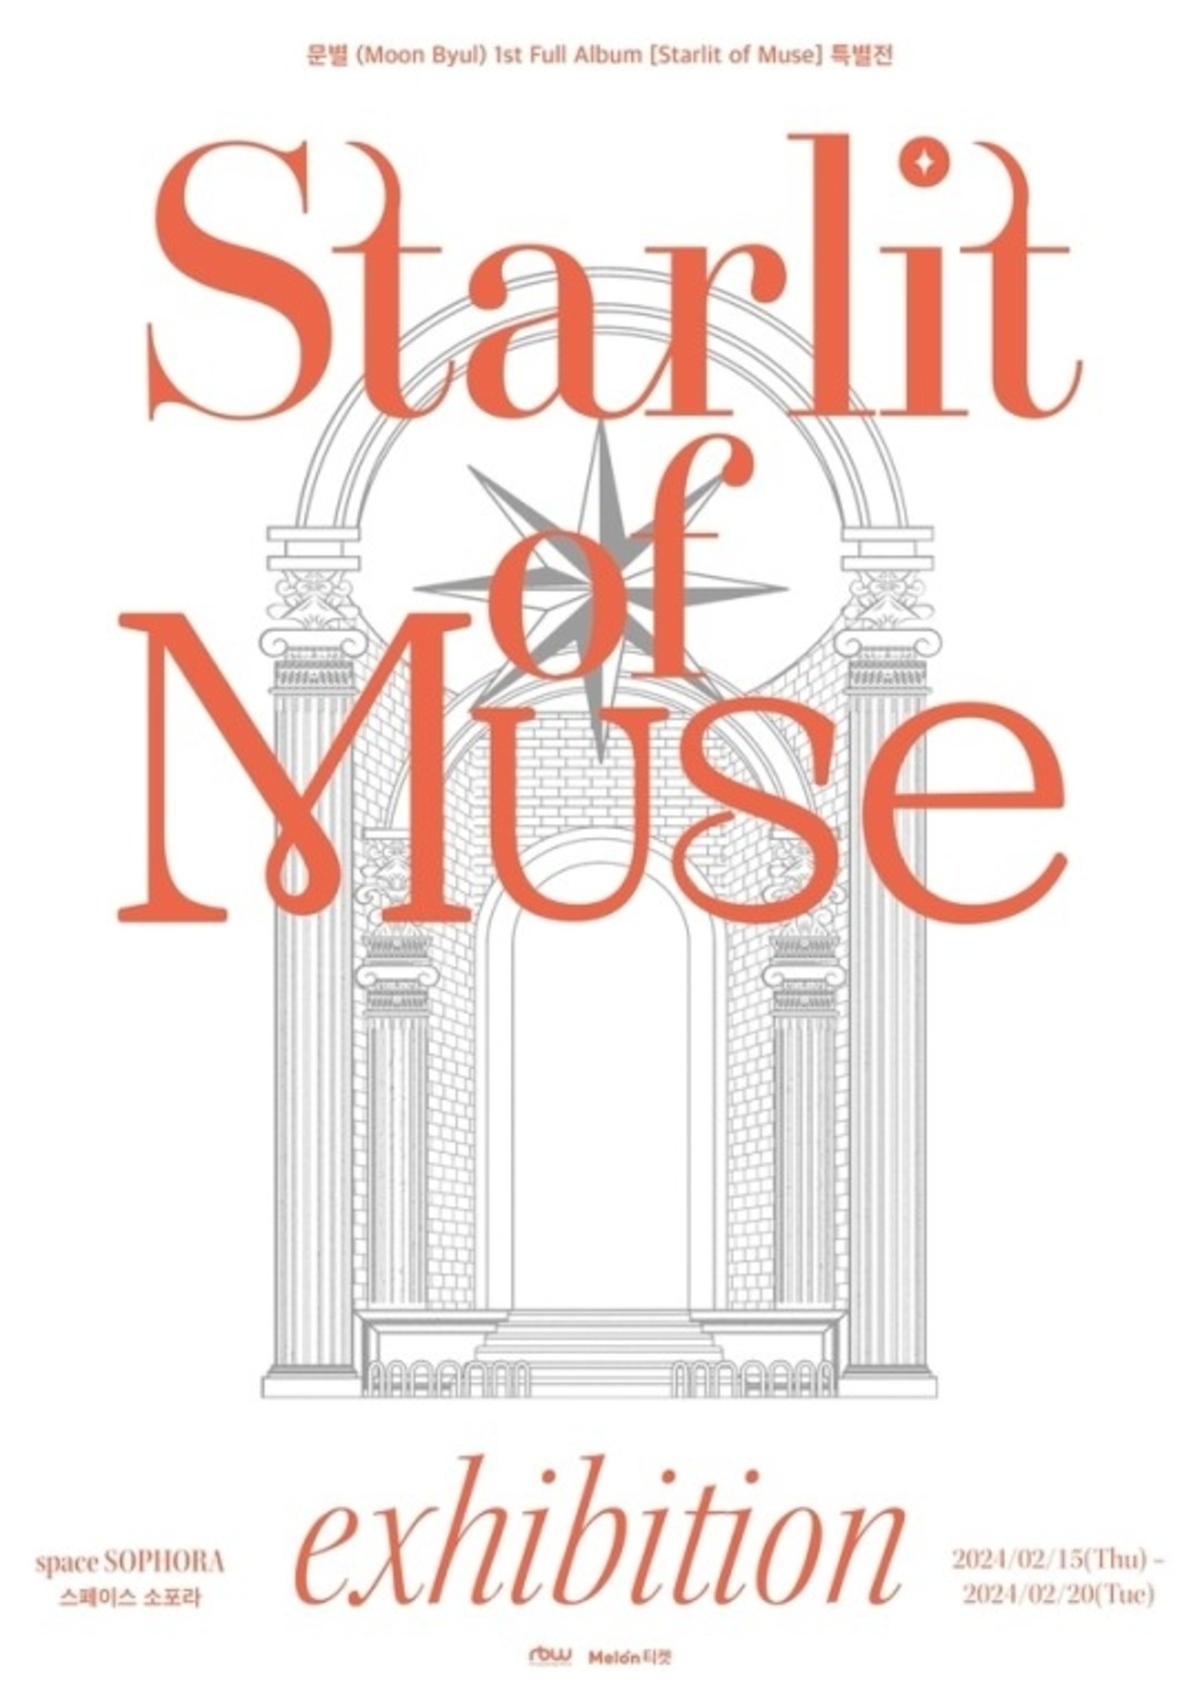 MAMAMOO ムンビョル、1stソロフルアルバム「Starlit of Muse」リリース 